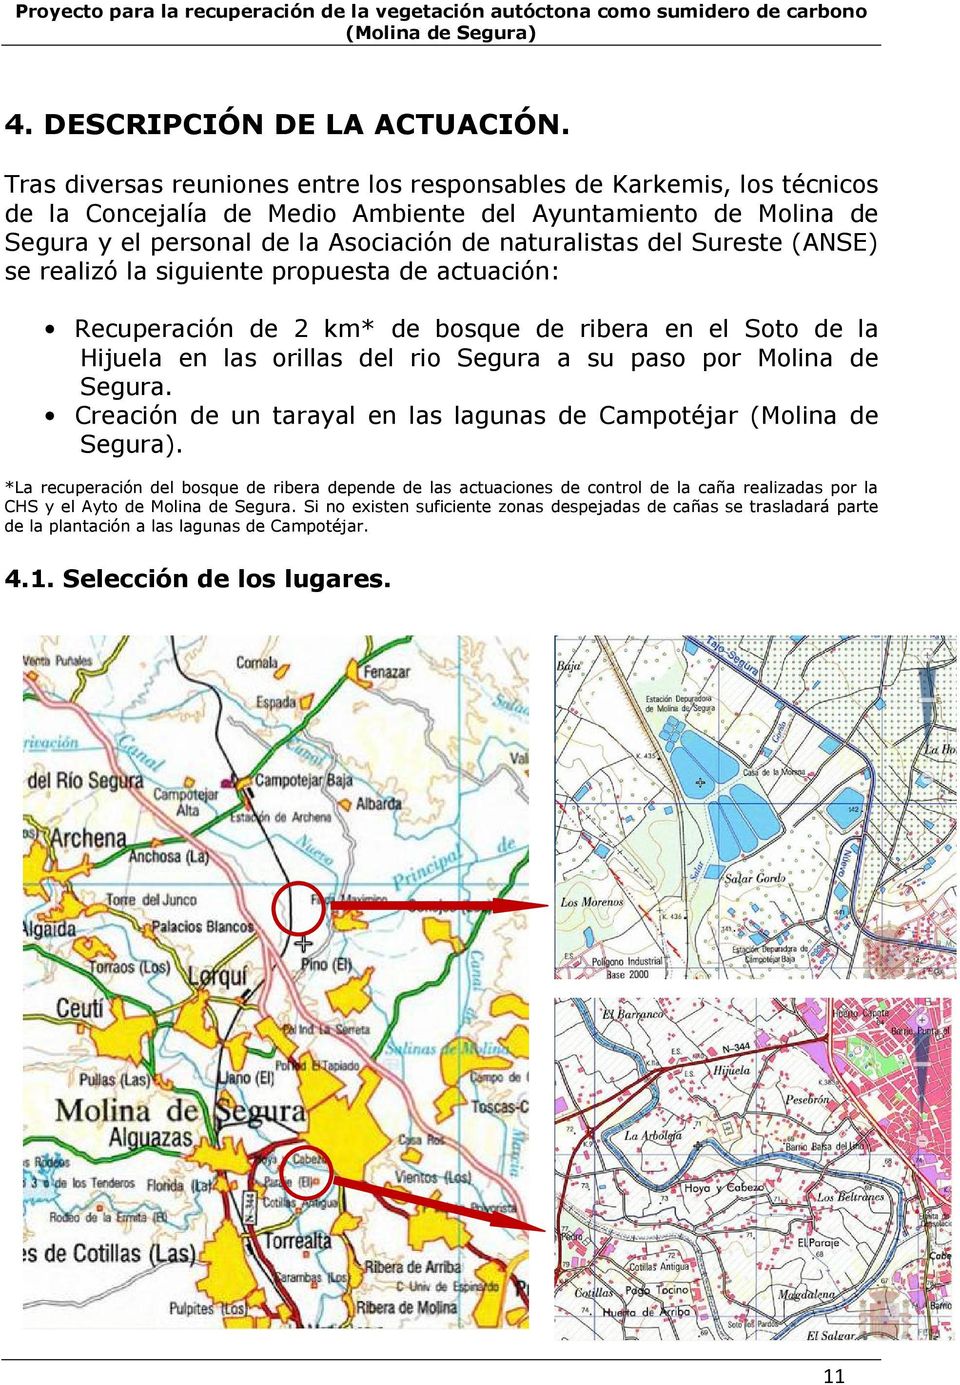 Sureste (ANSE) se realizó la siguiente propuesta de actuación: Recuperación de 2 km* de bosque de ribera en el Soto de la Hijuela en las orillas del rio Segura a su paso por Molina de Segura.